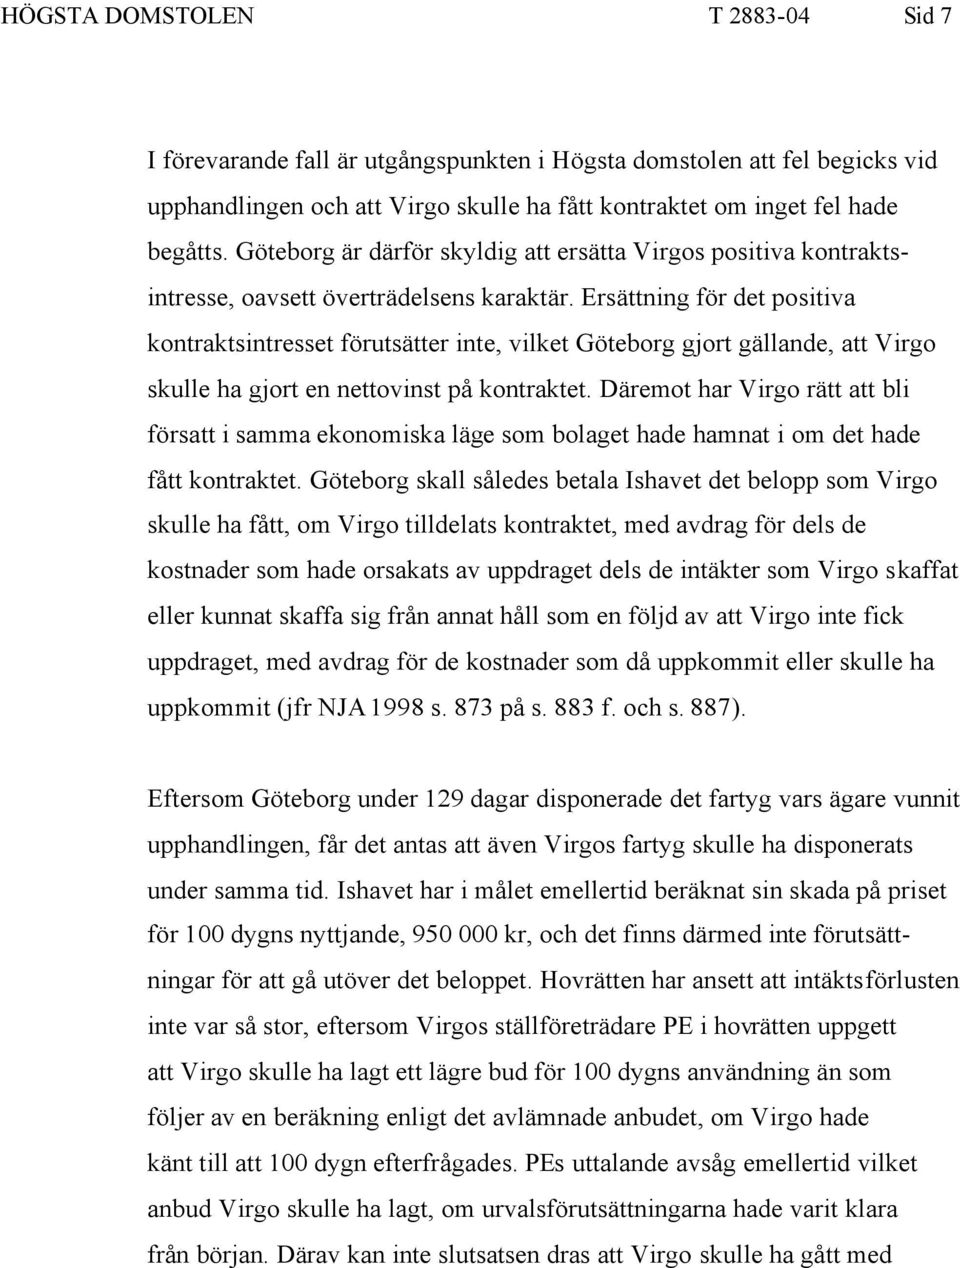 Ersättning för det positiva kontraktsintresset förutsätter inte, vilket Göteborg gjort gällande, att Virgo skulle ha gjort en nettovinst på kontraktet.